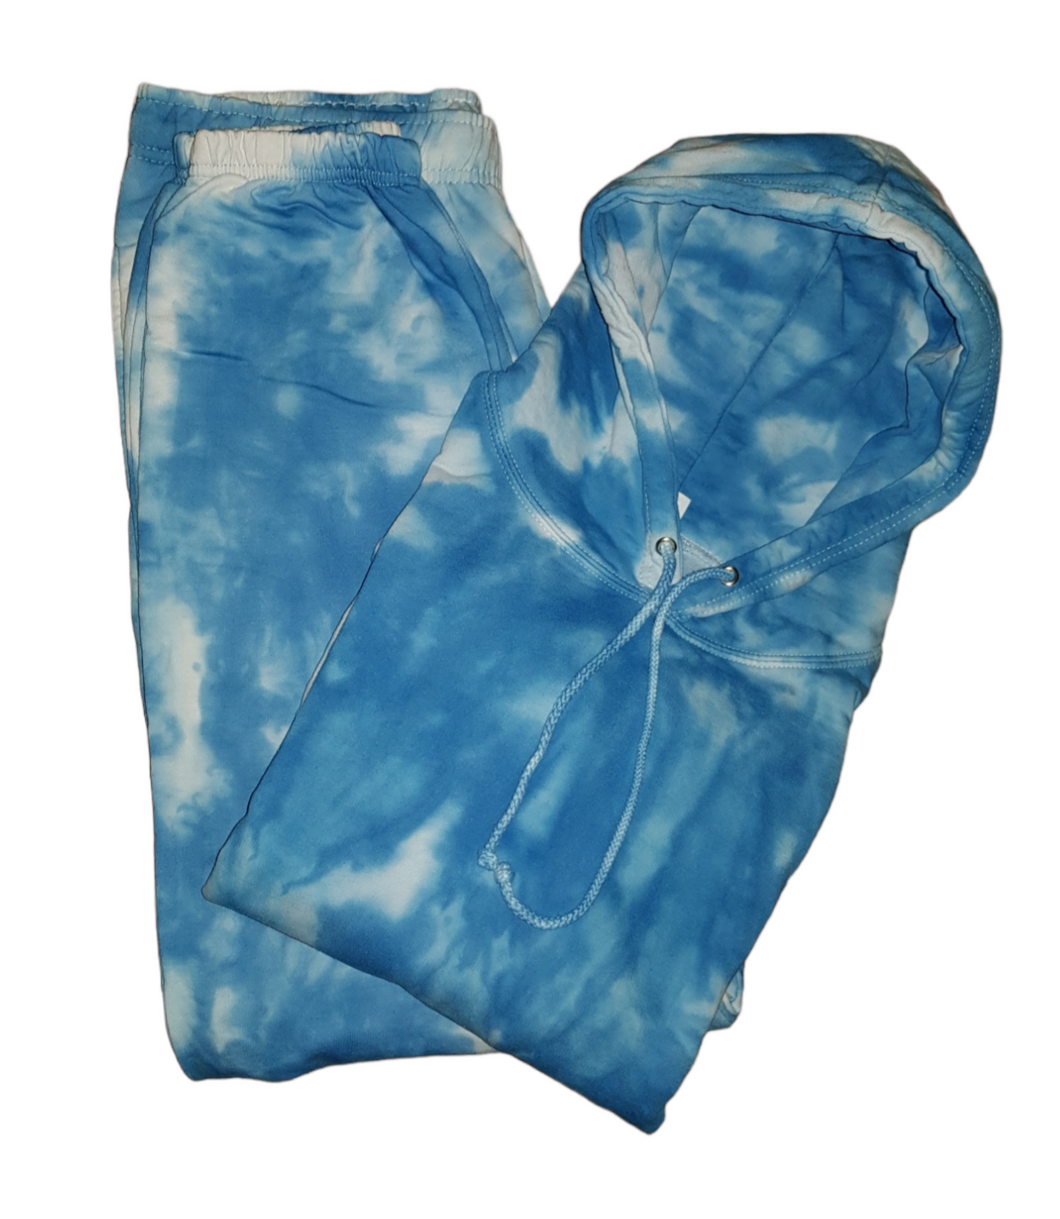 Scrunch pattern tracksuit - Tie dye unisex tracksuit (adult sizes) - Colours customisable